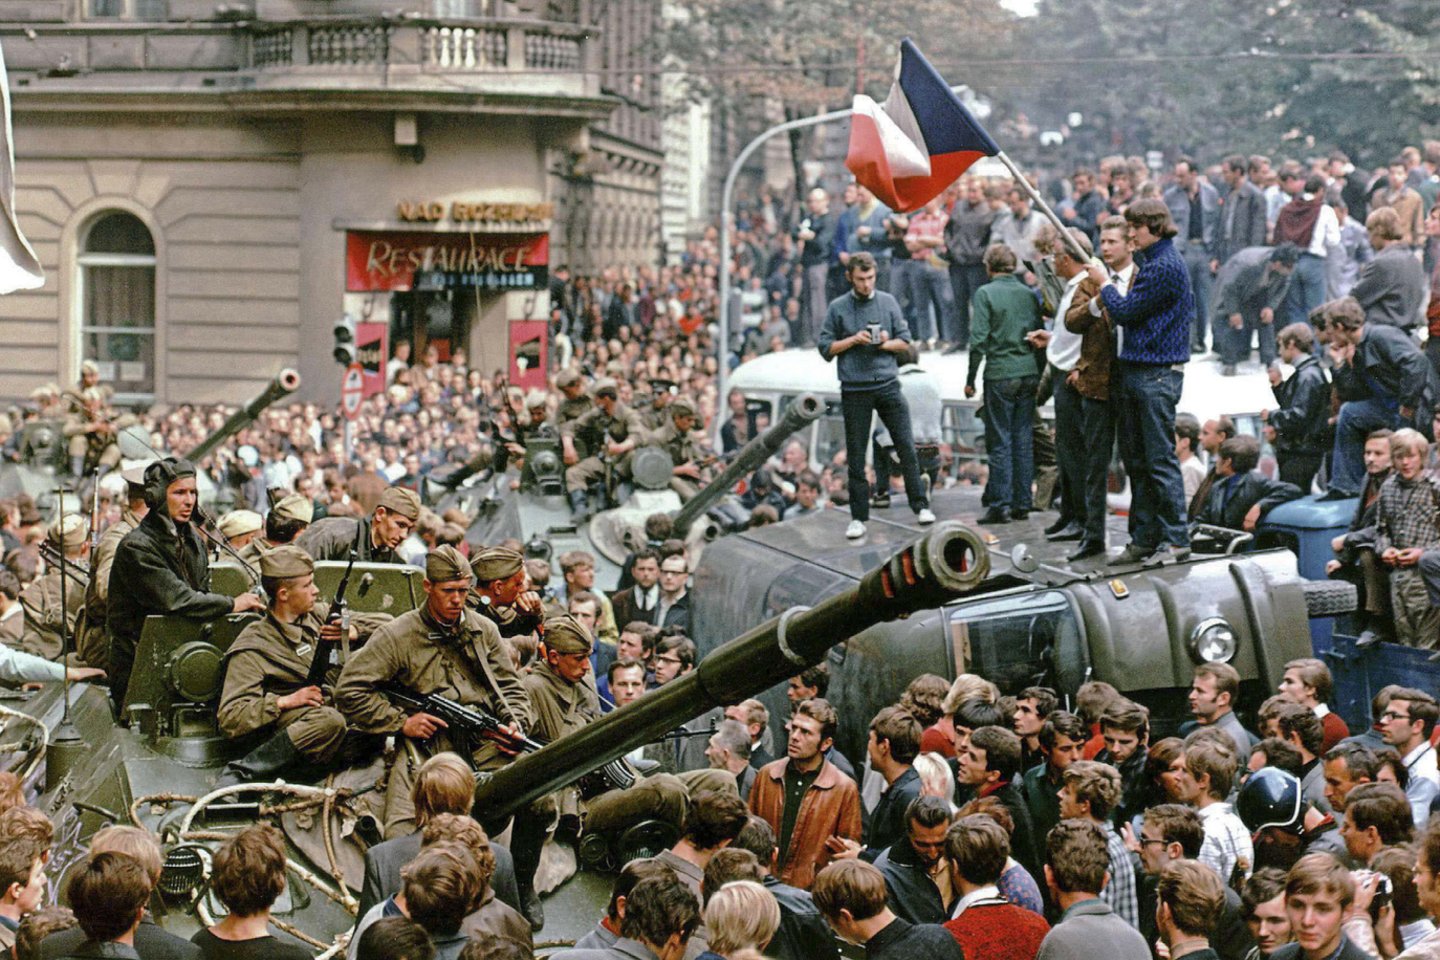  1968 merų rugpjūtį Varšuvos sutarties valstybių kariuomenė įžengė į Čekoslovakiją, kad numalšintų vadinamąjį Prahos pavasarį – bandymą demokratizuoti komunistinę sistemą.<br> Reuters/Scanpix nuotr.